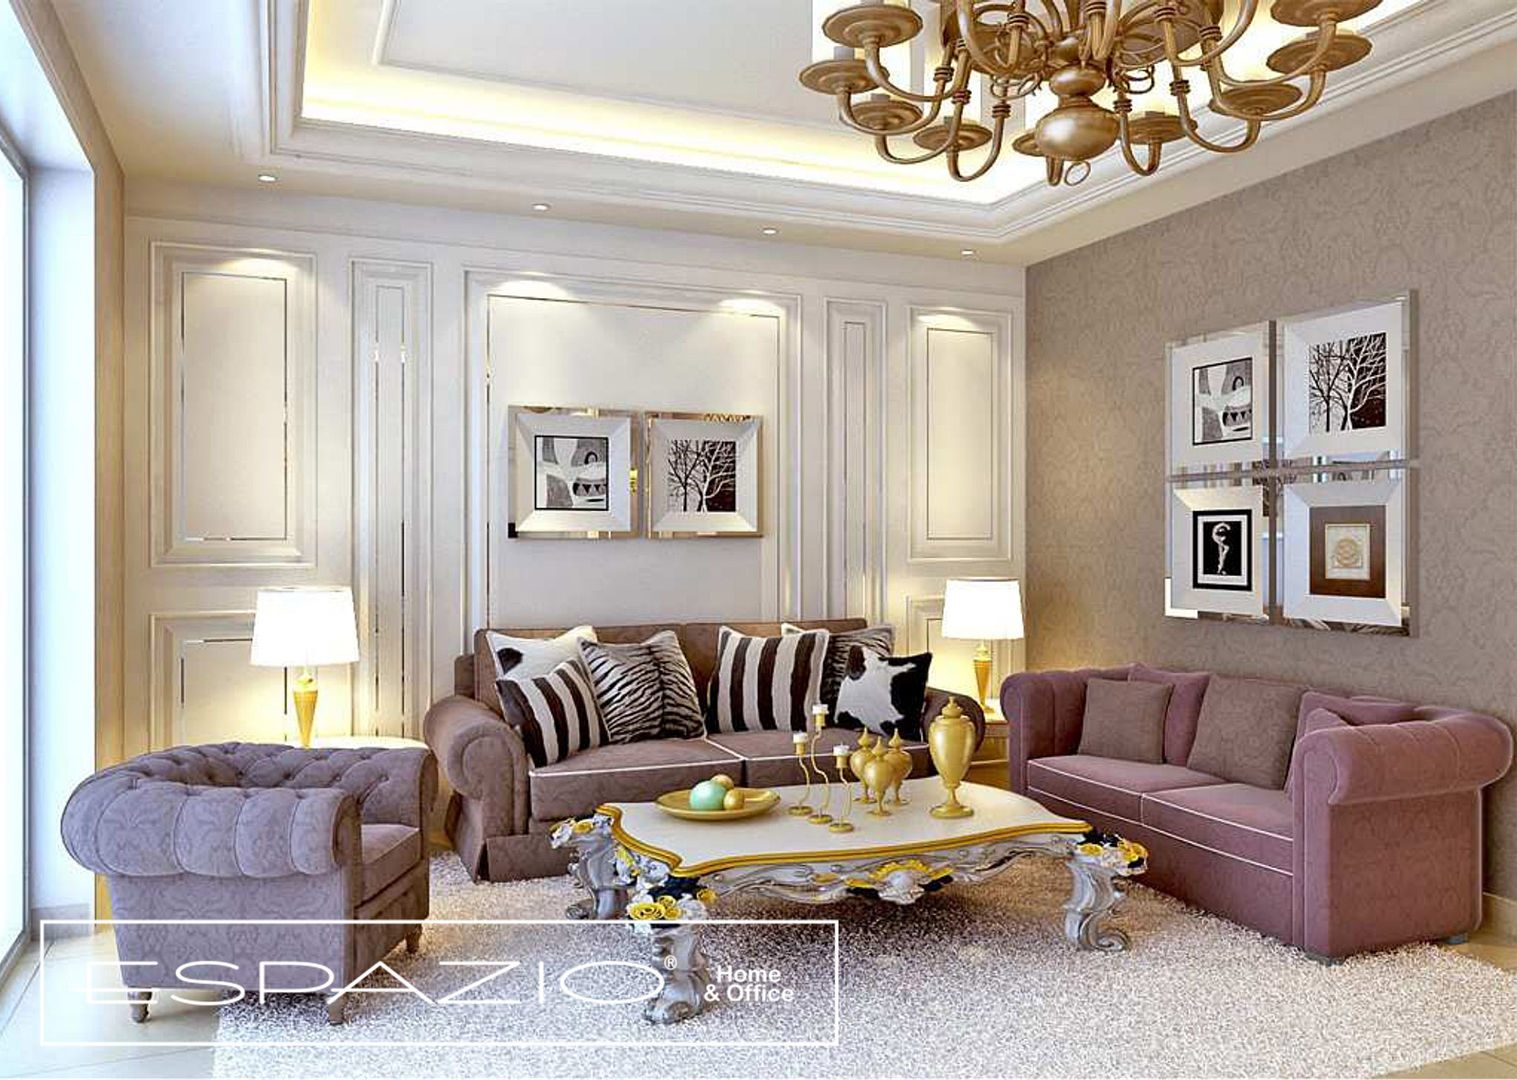 Apartamento de Luxo, Espazio - Home & Office Espazio - Home & Office Salas de estilo clásico